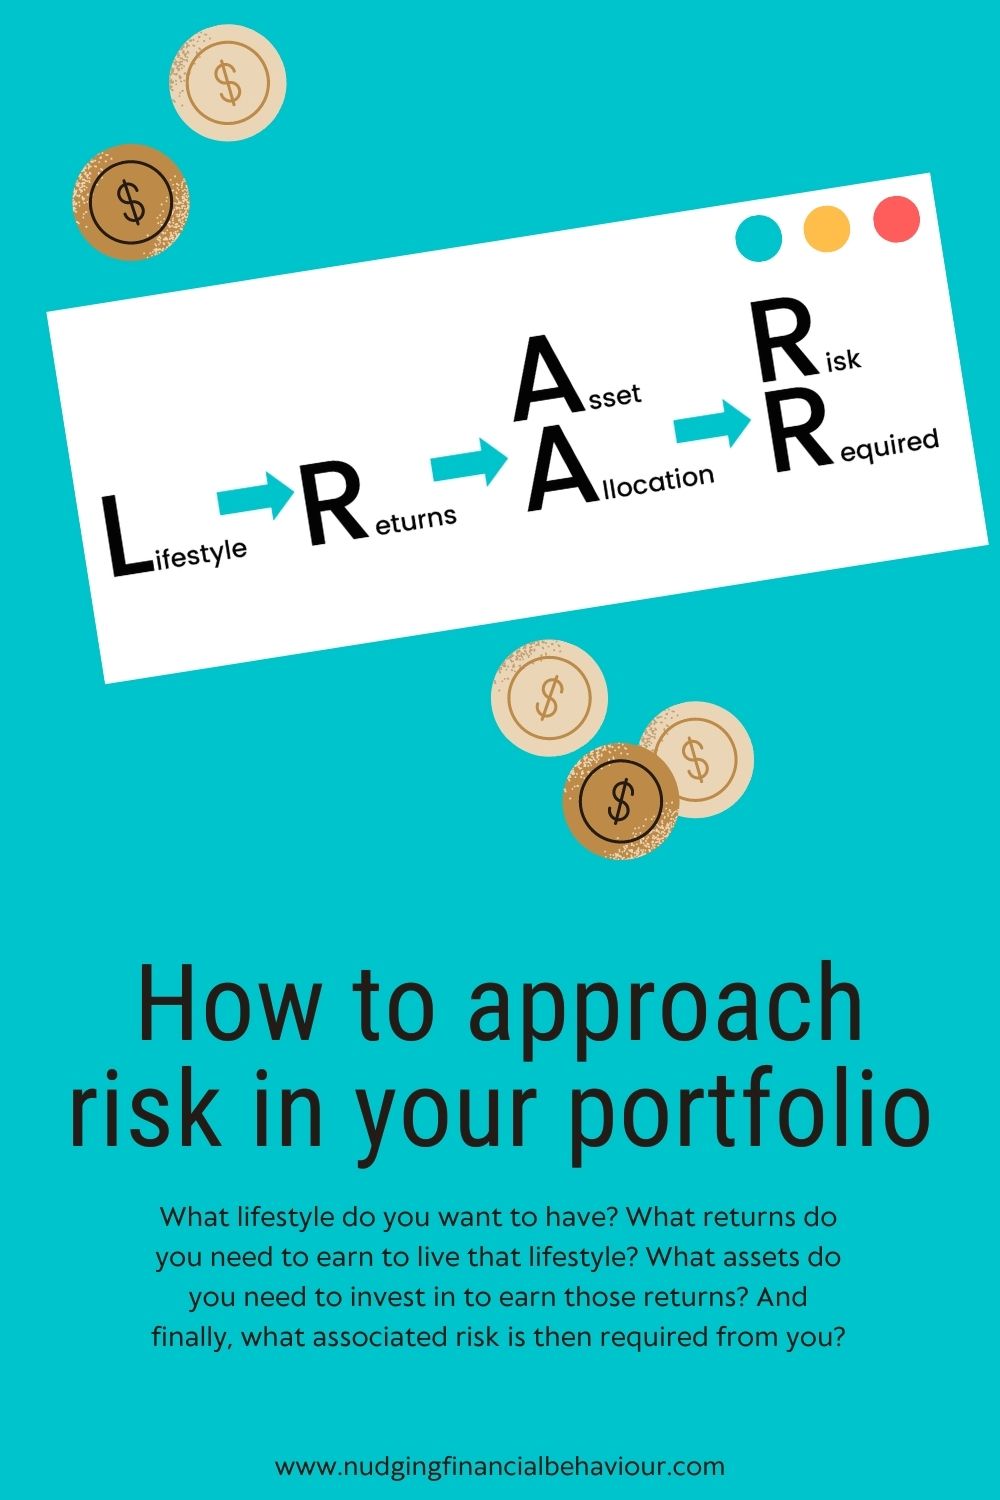 Risk in your portfolio